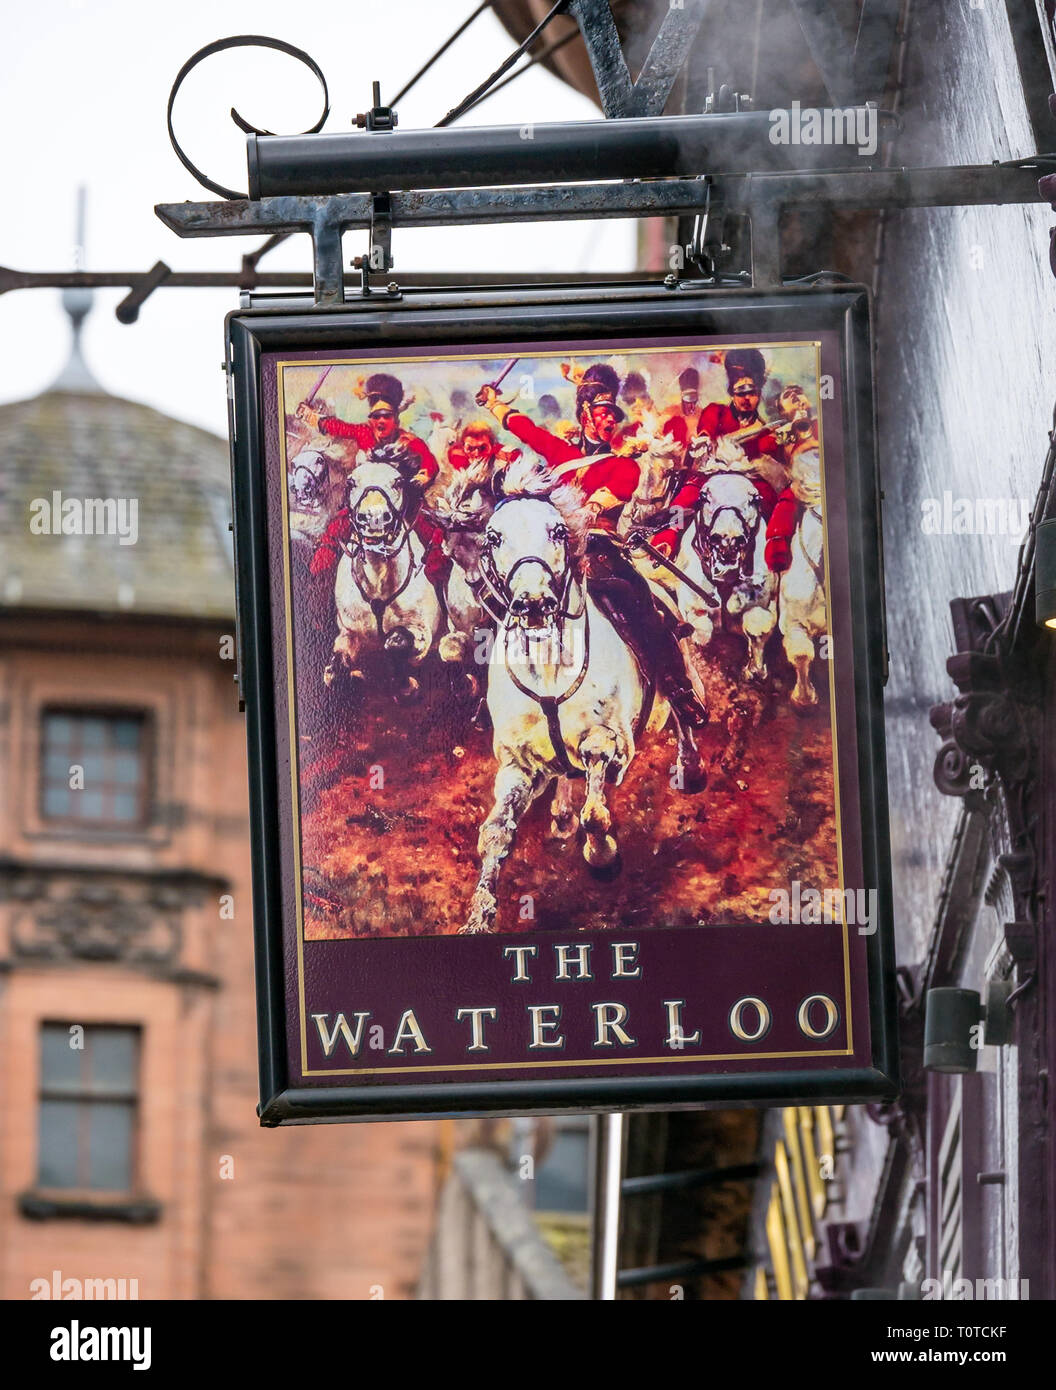 Gut Gay Bar traditionelle viktorianische Pub die Waterloo mit pub Zeichen bekannt, Wellington Street, Glasgow, Schottland, Großbritannien Stockfoto